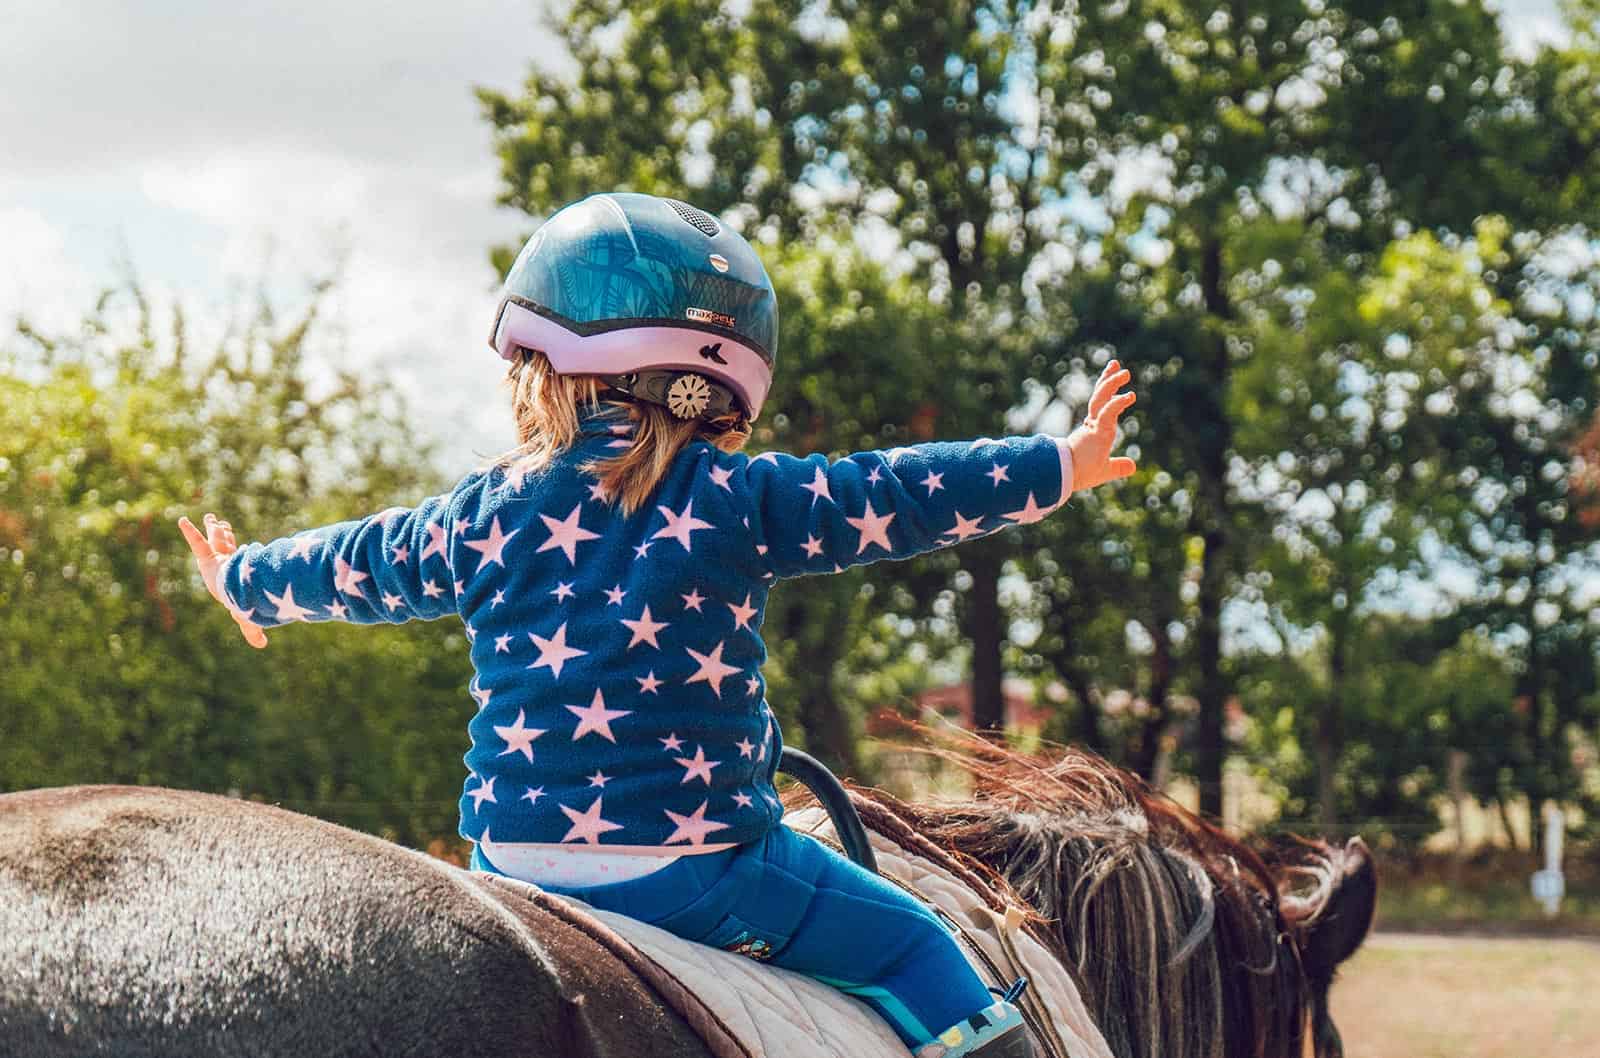 Horse Riding Helmets For Children